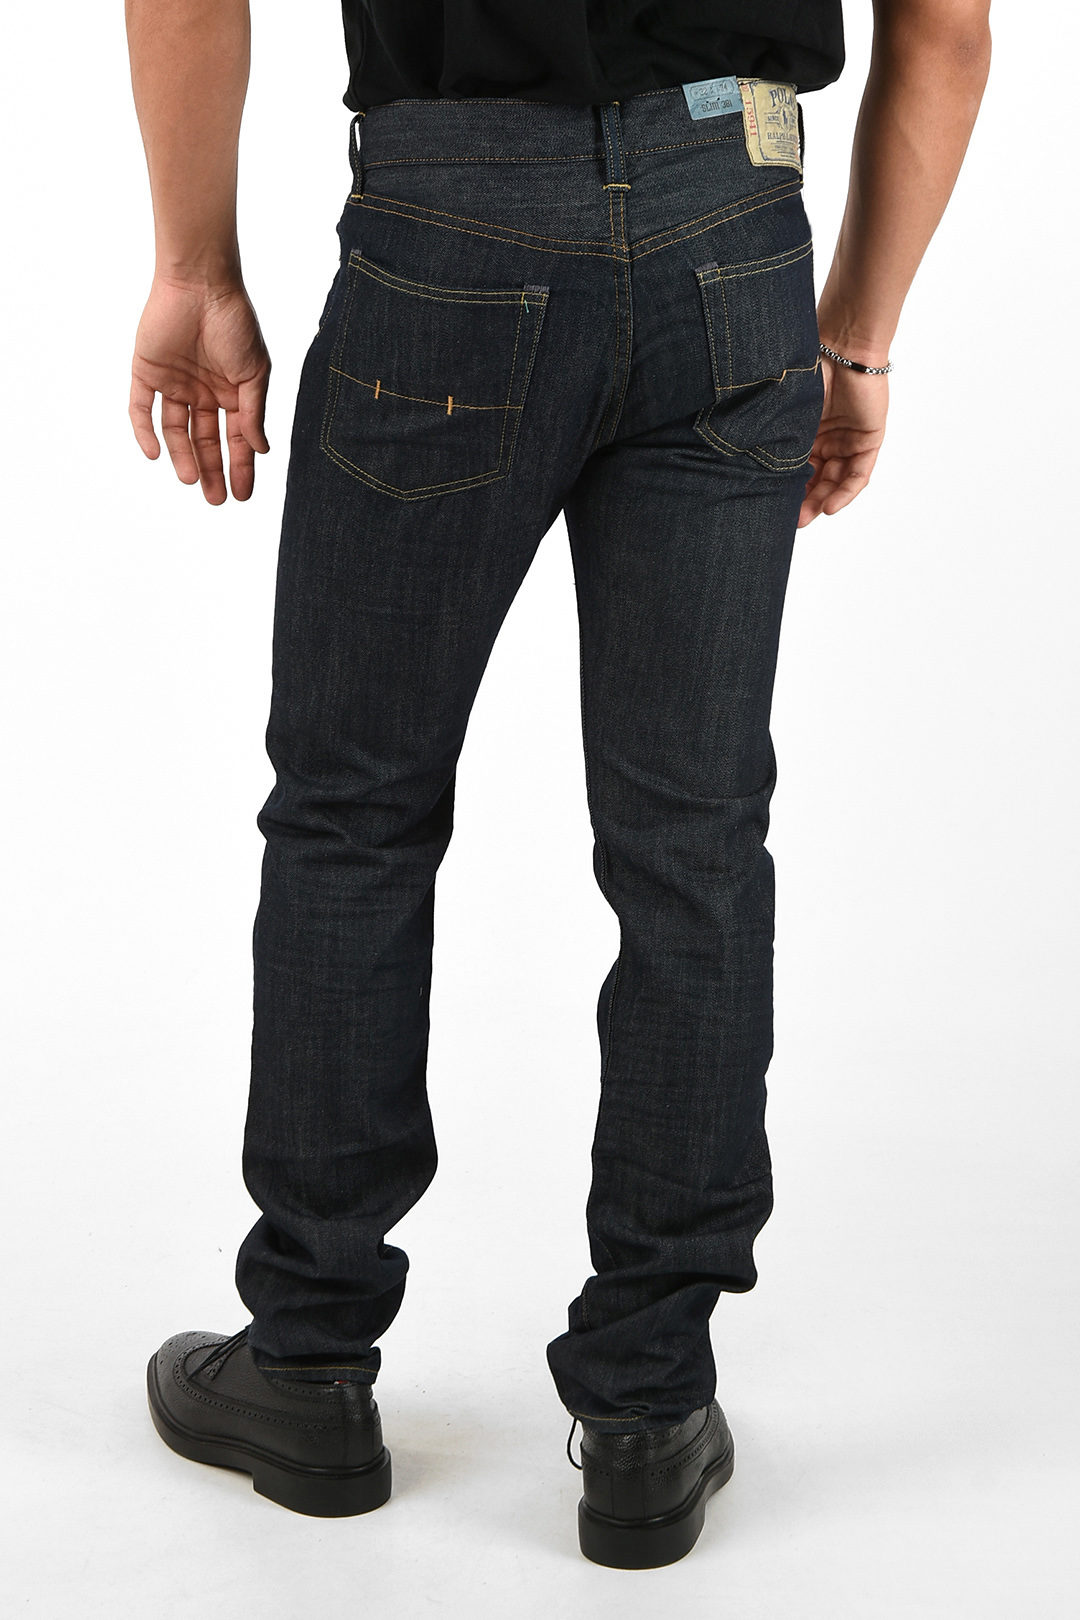 Polo Ralph Lauren 19cm slim fit 381 jeans men - Glamood Outlet